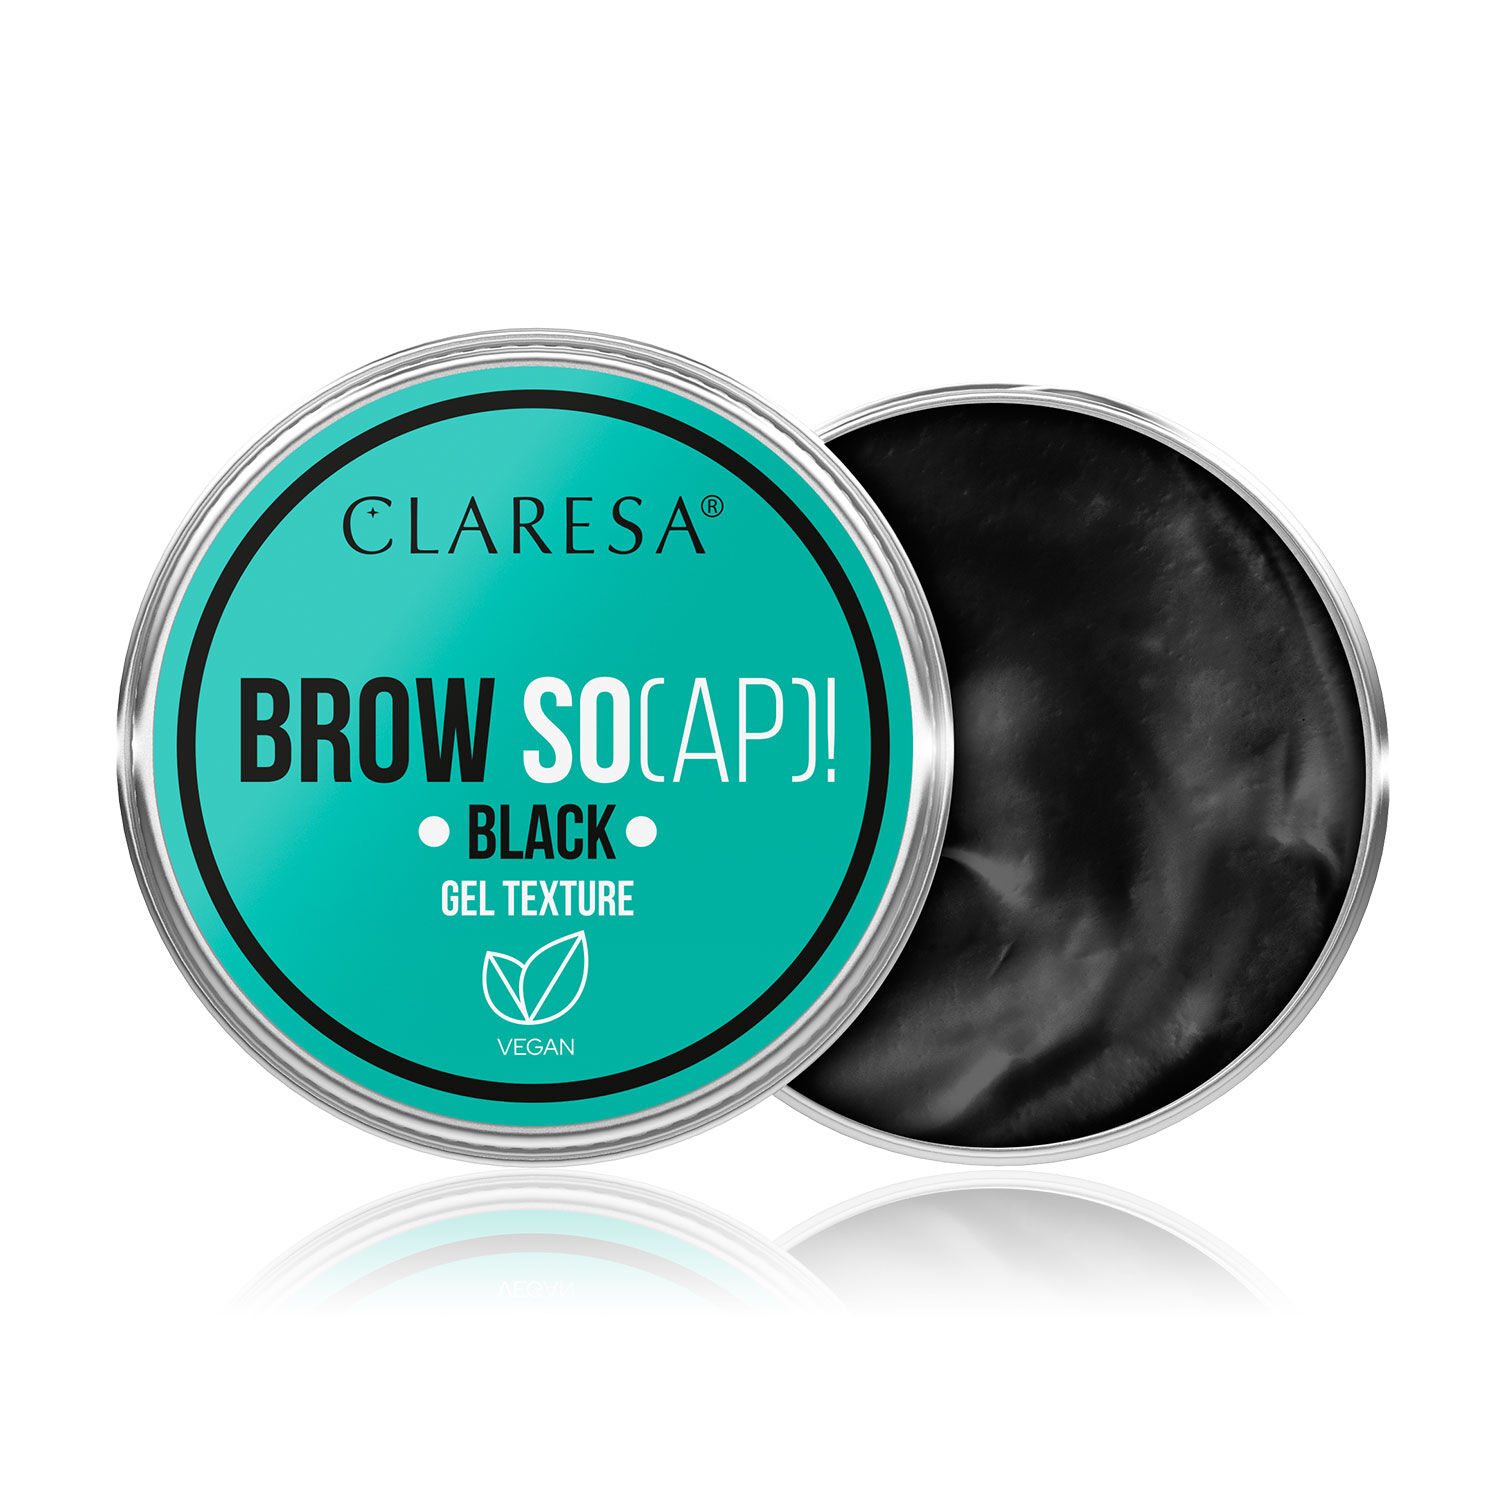 Мыло для укладки бровей черное Claresa Brow So(Ap)!, 30 мл цена и фото